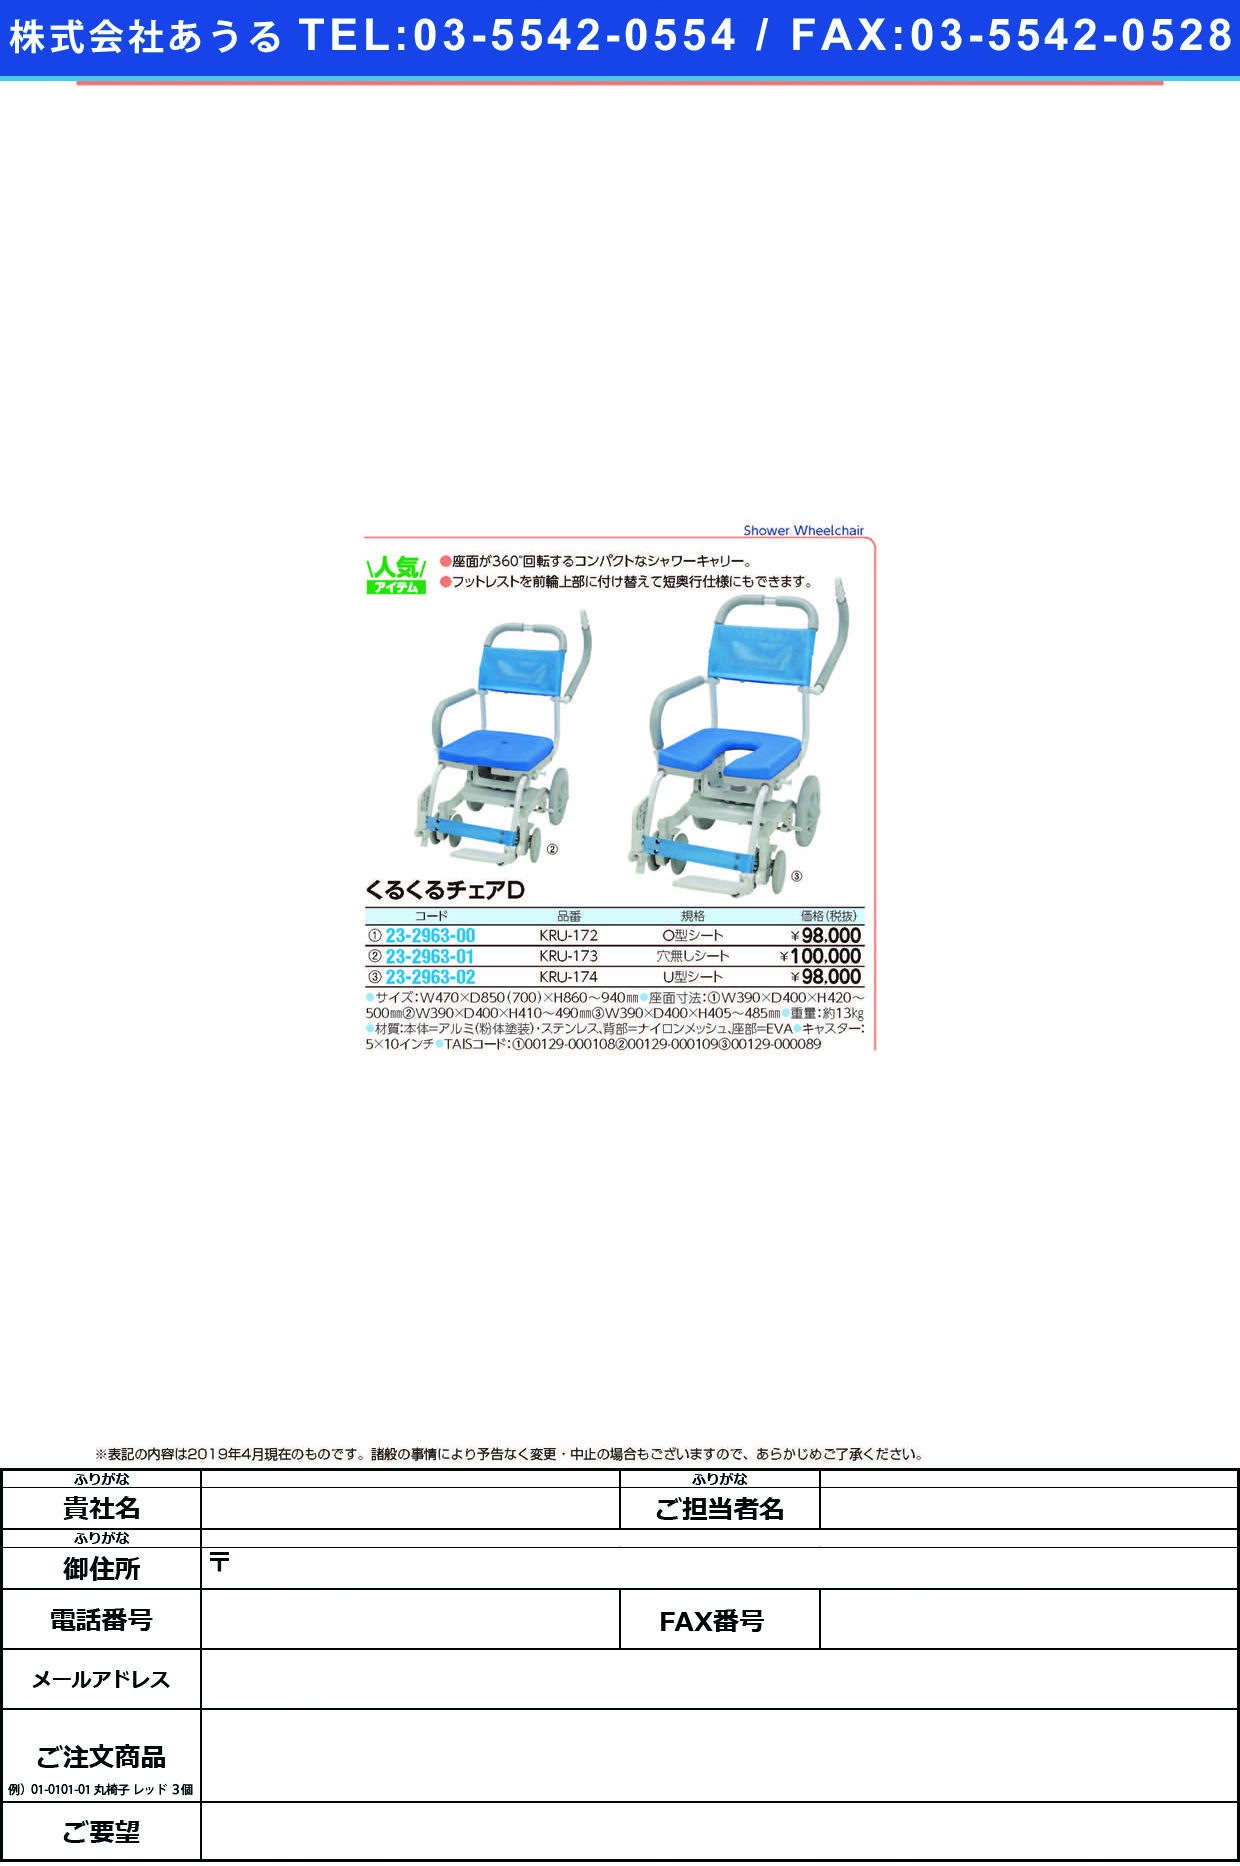 (23-2963-02)くるくるチェアＤ（Ｕ型シート） KRU-174 ｸﾙｸﾙﾁｪｱD【1台単位】【2019年カタログ商品】